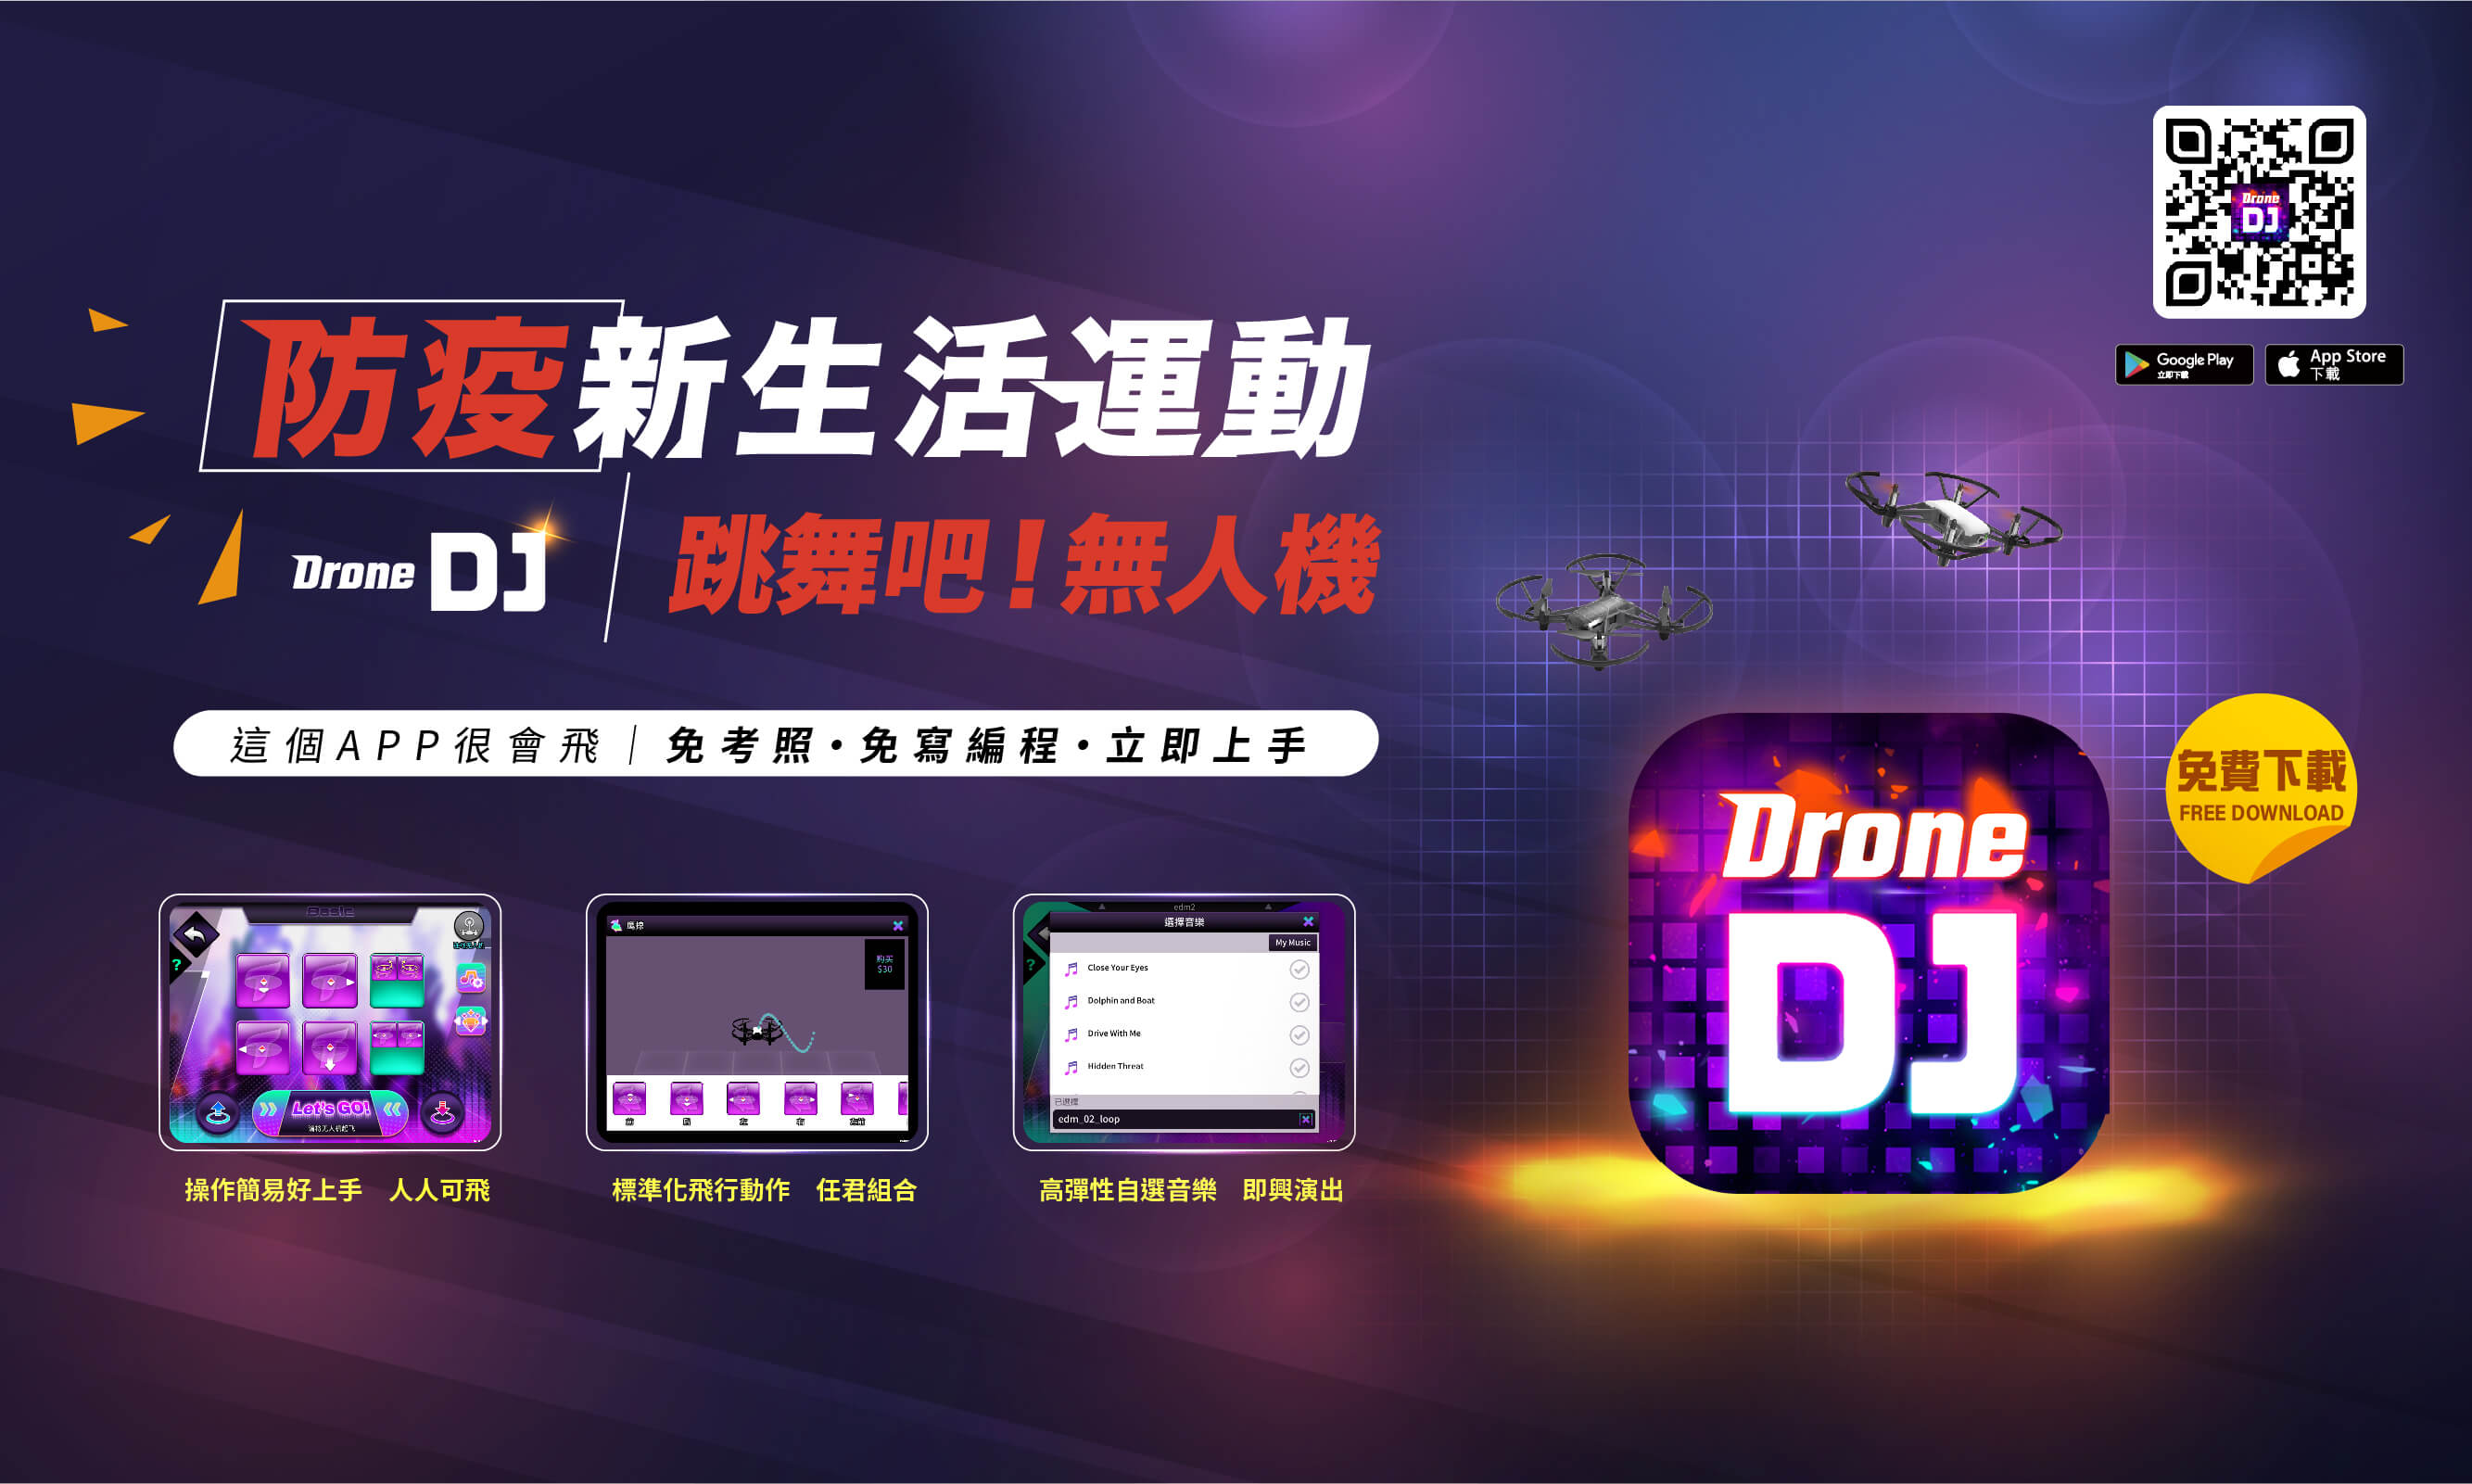 防疫新生活運動<br>Drone DJ/跳舞吧!無人機<br>APP下載連結:http://onelink.to/q3jhww